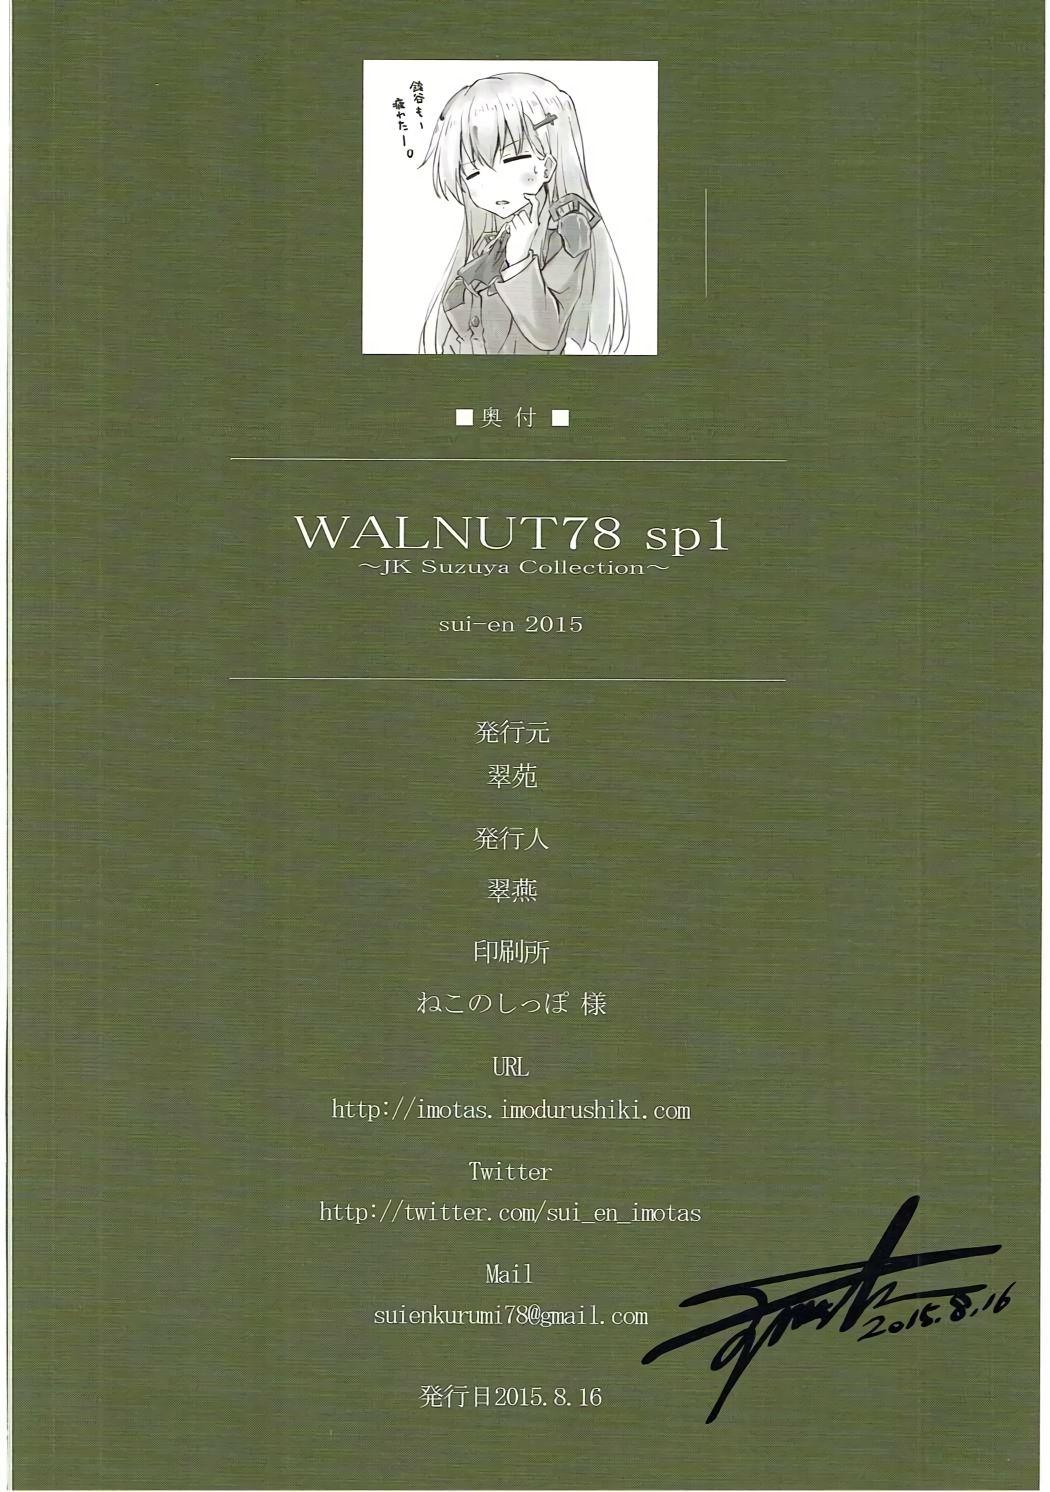 WALNUT78 SP1 28